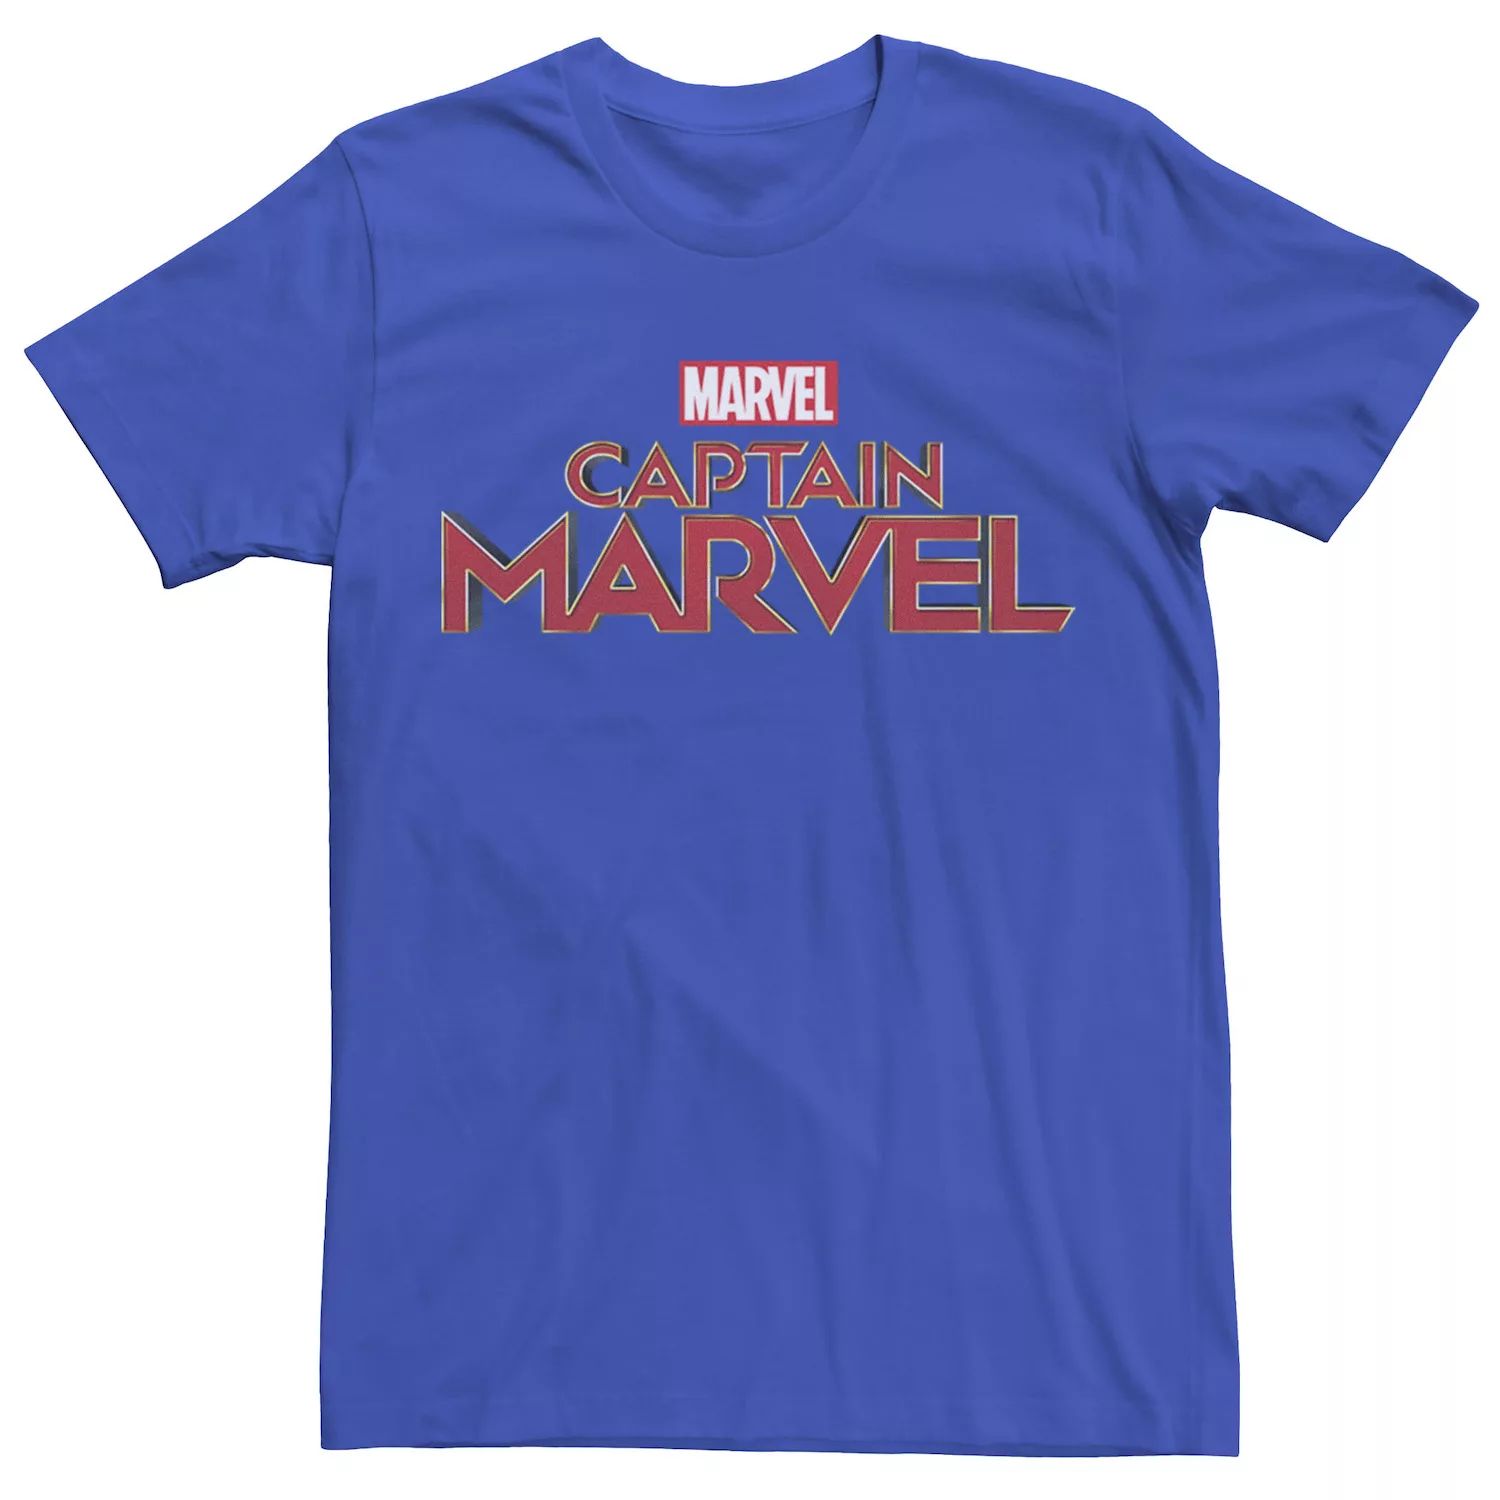 Мужская футболка с графическим логотипом и карманом Captain Marvel мужская футболка с рваным винтажным круглым логотипом marvel captain marvel и графическим рисунком